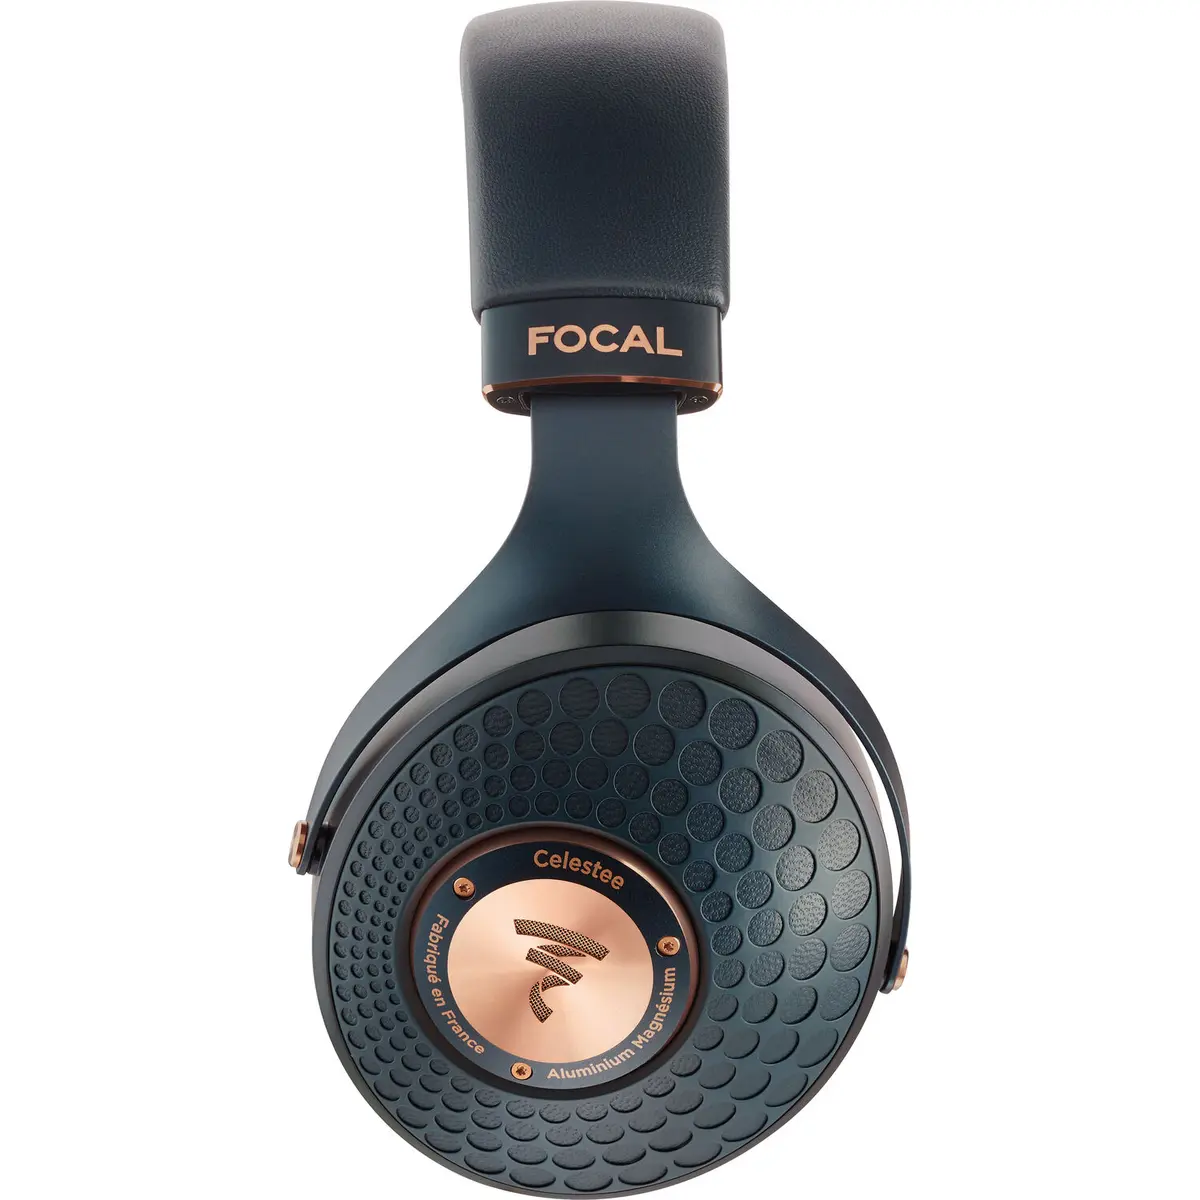 5. Focal Celestee High-end Over-ear headphones